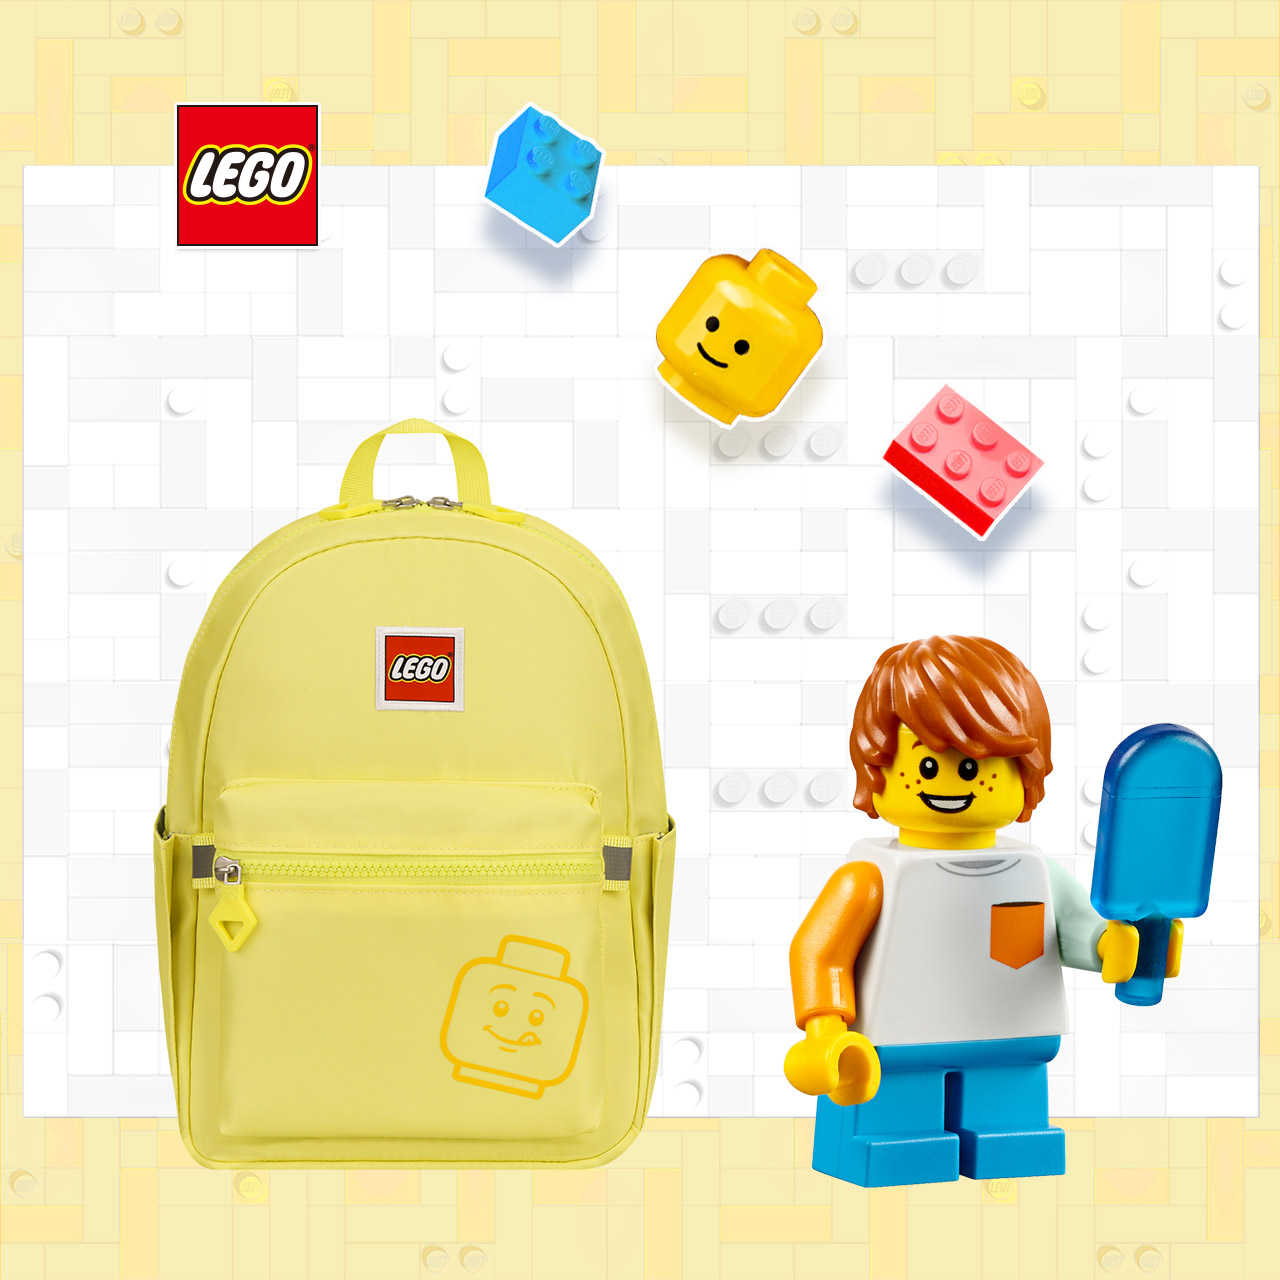 LEGO丹麥樂高笑臉小背包-積木表情符號黃色 20129-1937